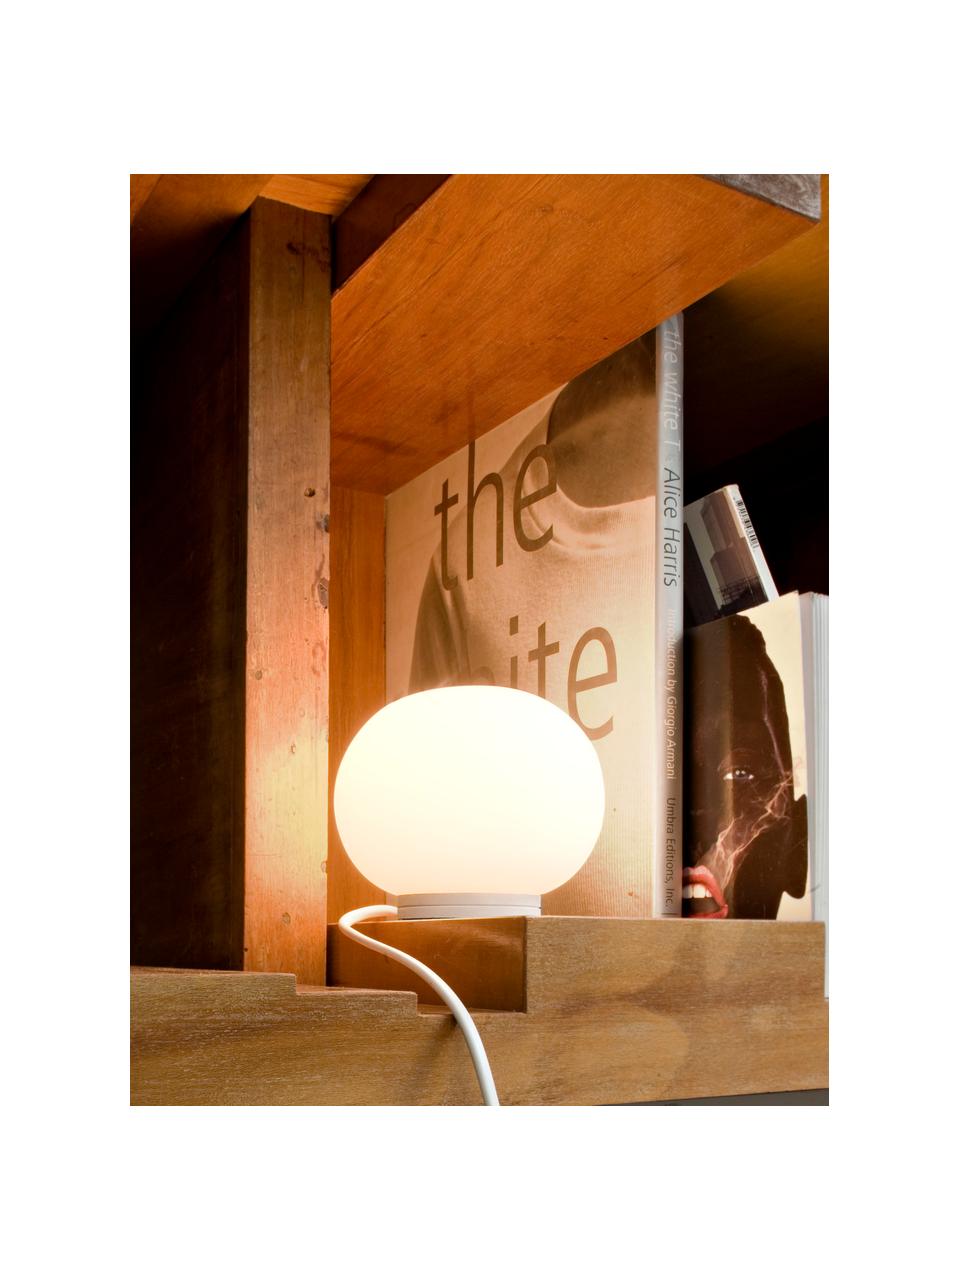 Lampada da tavolo piccola con luce regolabile Glo-Ball, Paralume: vetro, Struttura: plastica, Bianco, Ø 12 x Alt. 9 cm